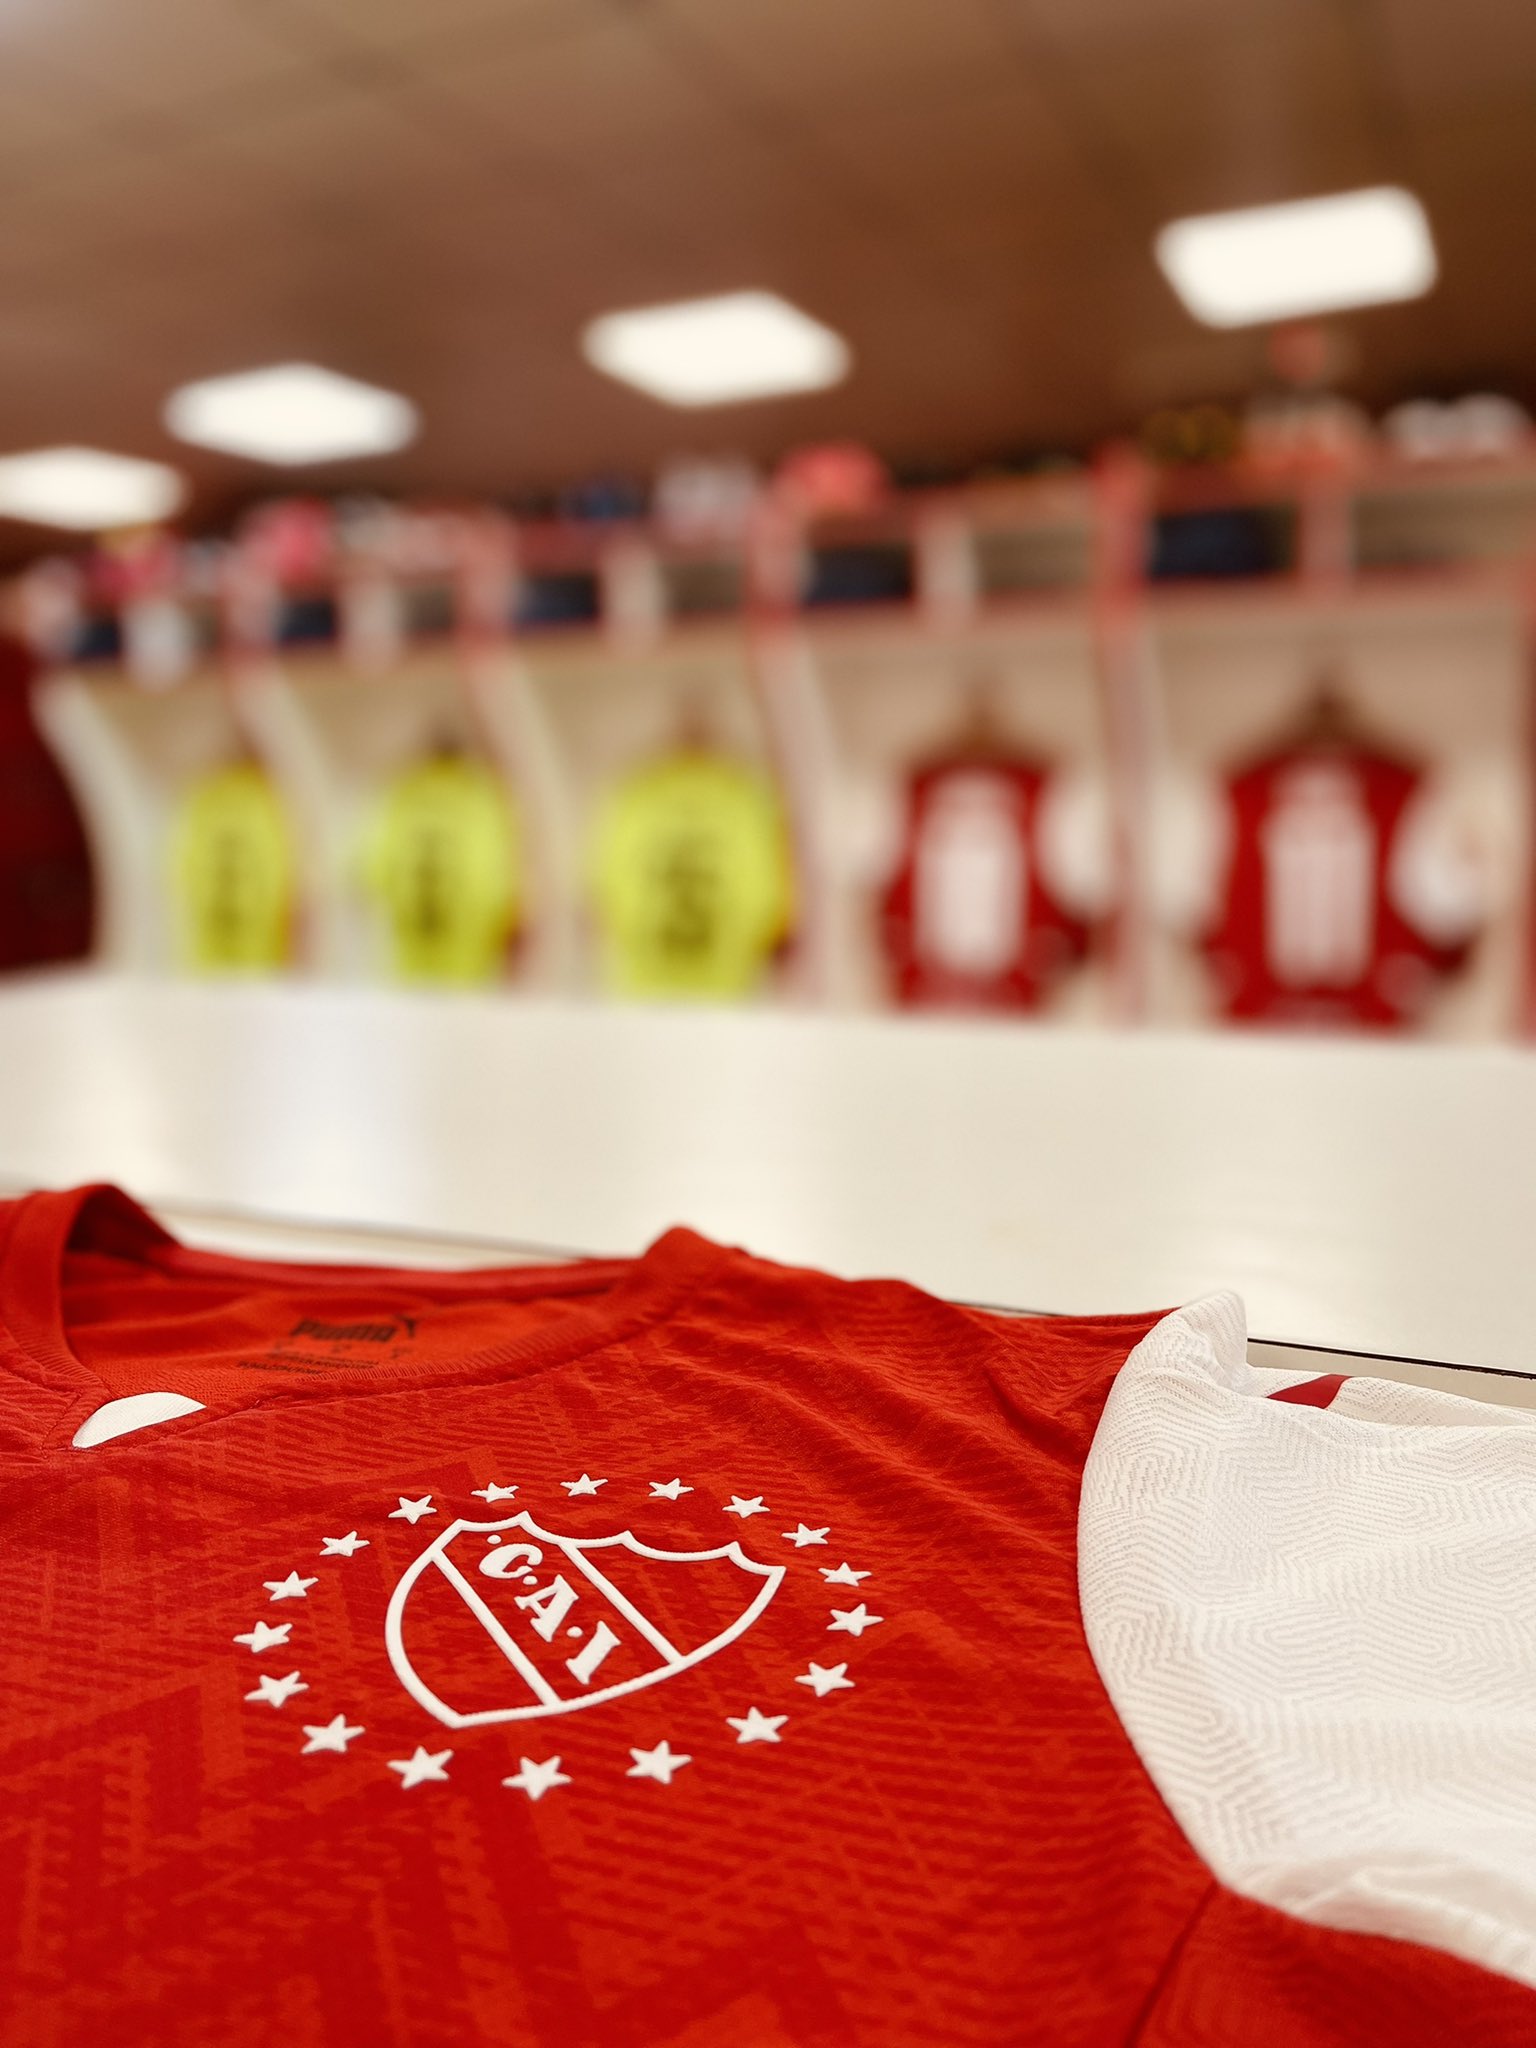 CA Independiente 2022 Home Kit